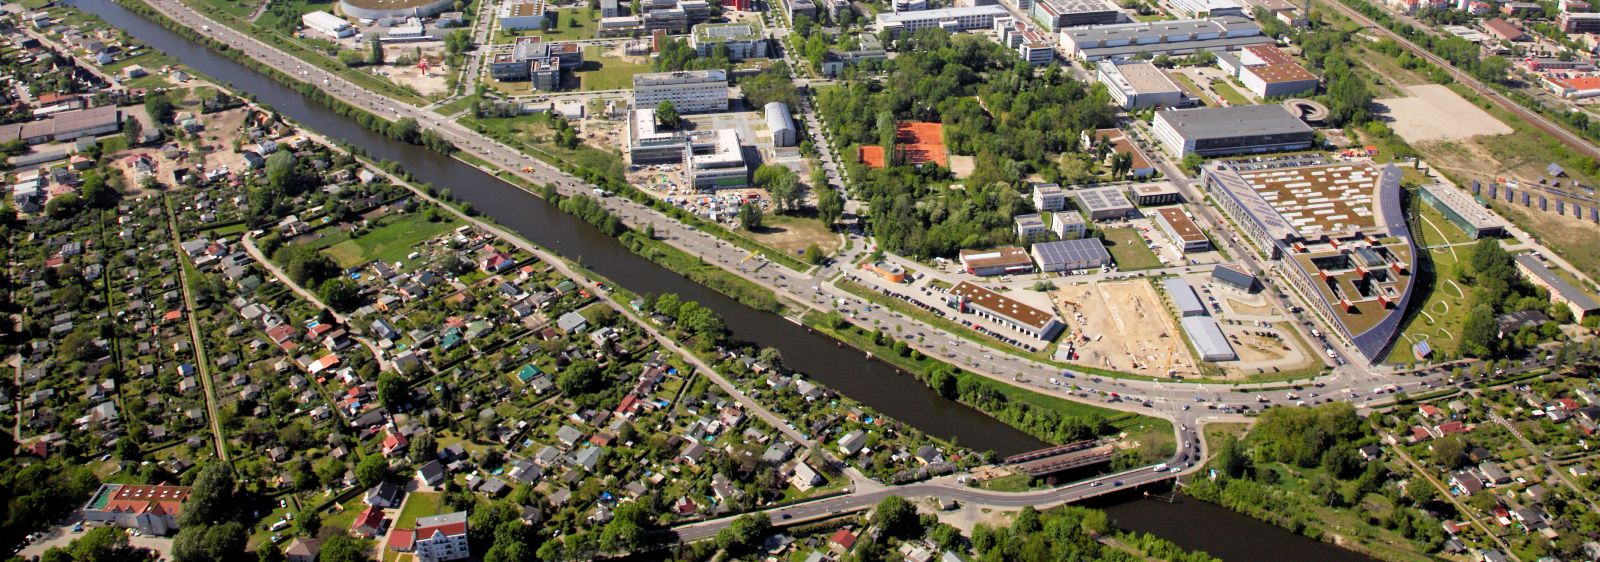 Luftbild des Standorts Adlershof im Mai 2013